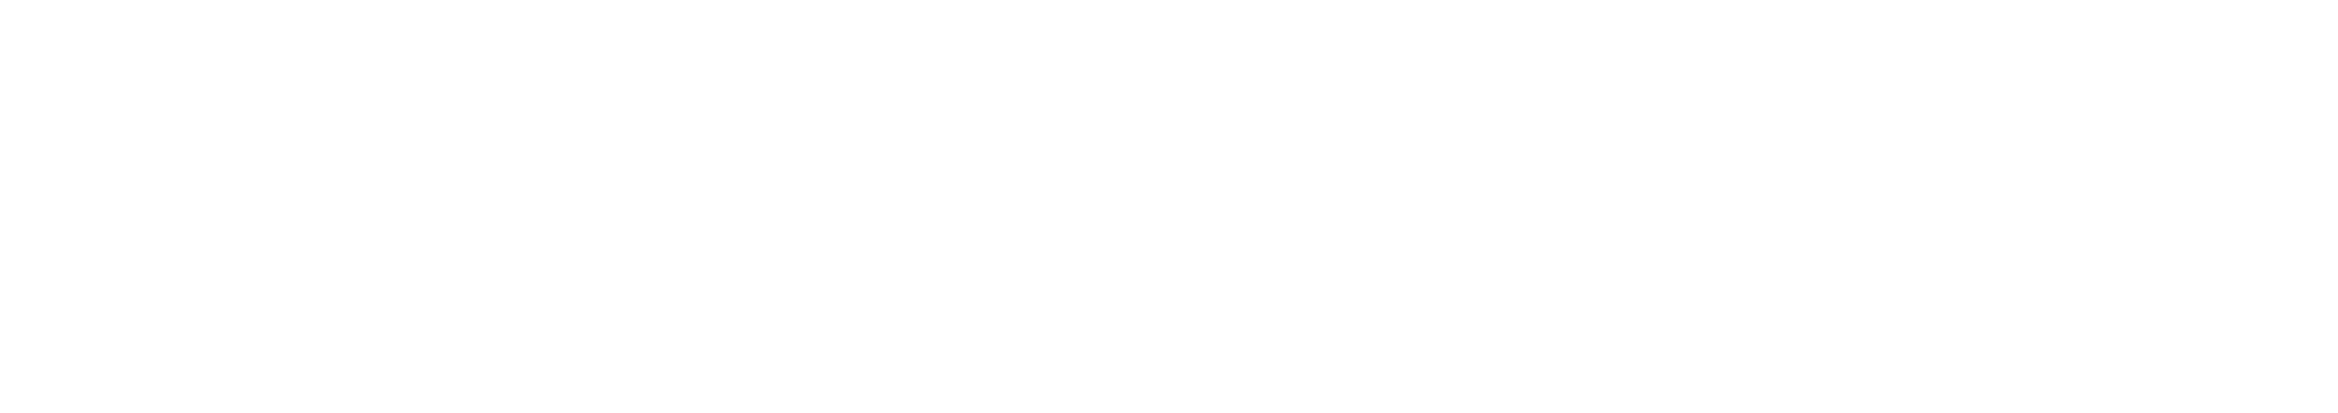 axyon_logo_white